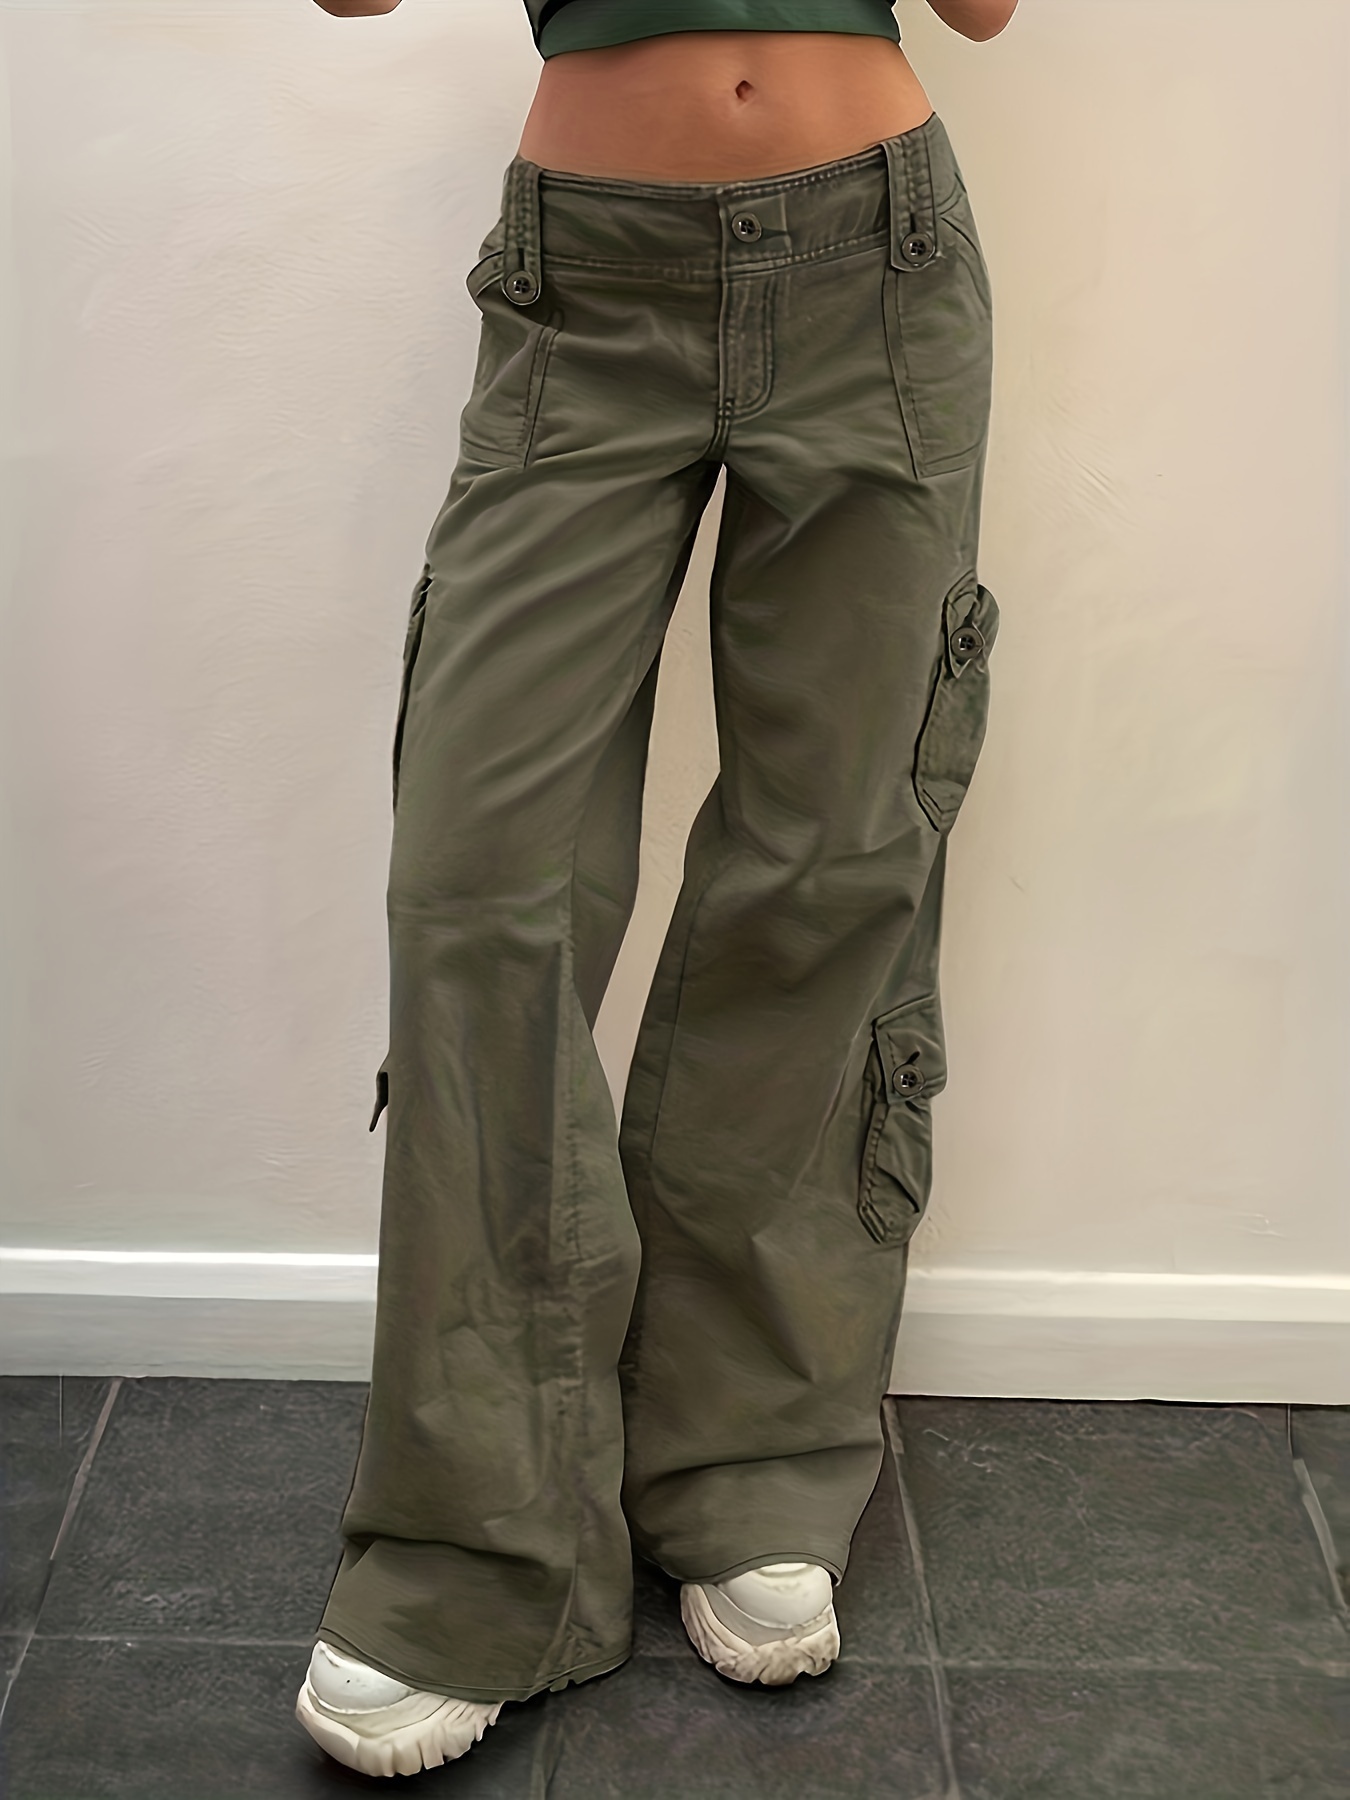 Fashion Alt Army Military Denim Trousers Green Cargo Cyber Y2k